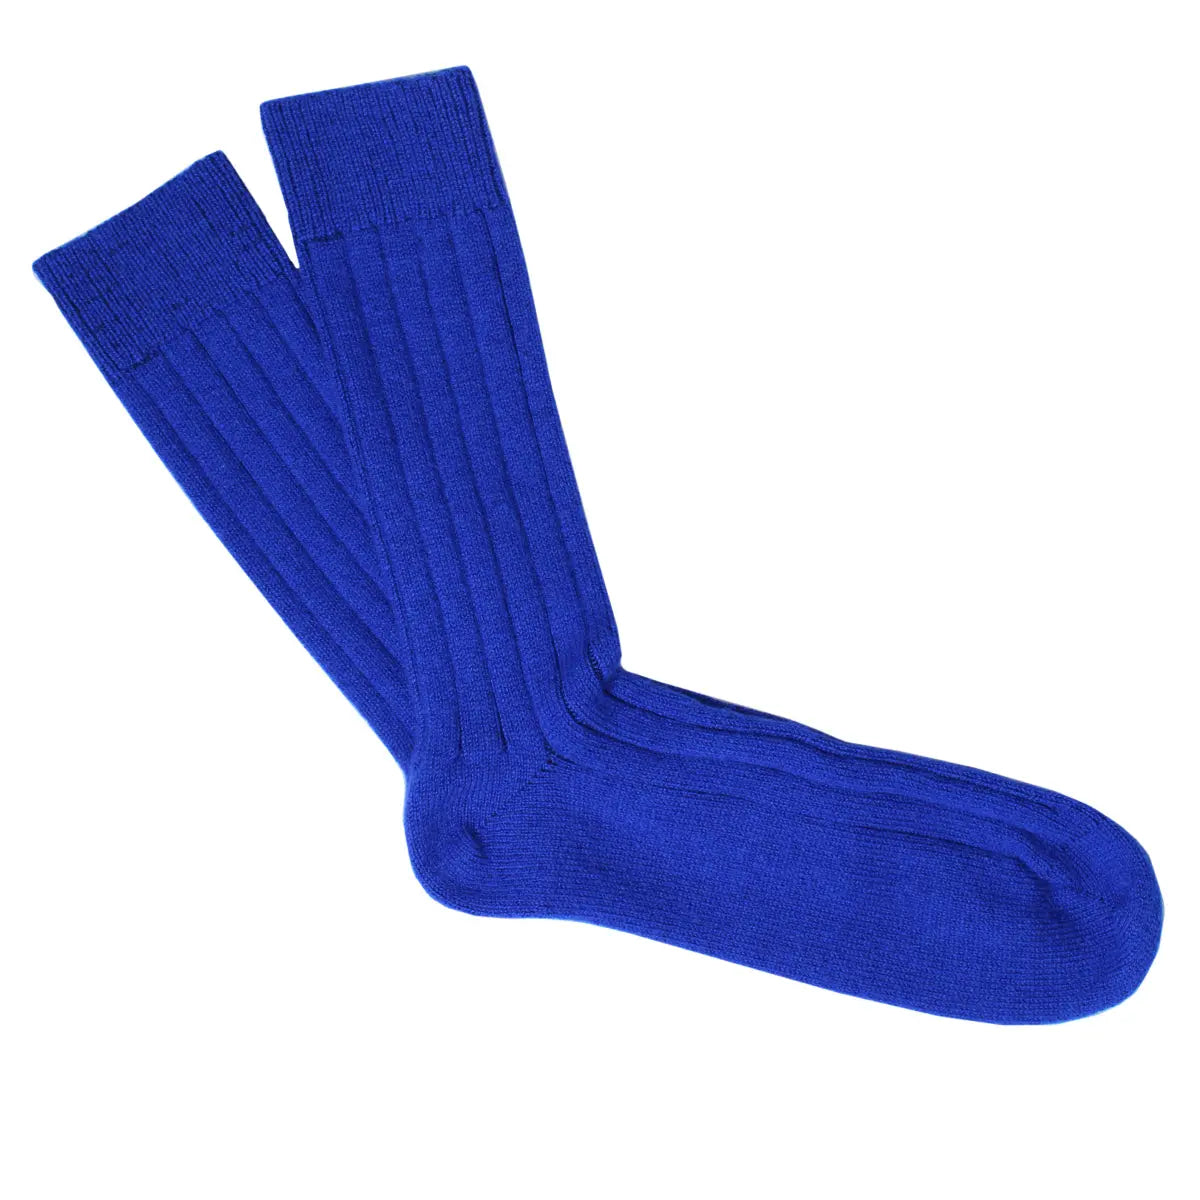 Royal Blue Cashmere Blend Ribbed Socks  Robert Old   